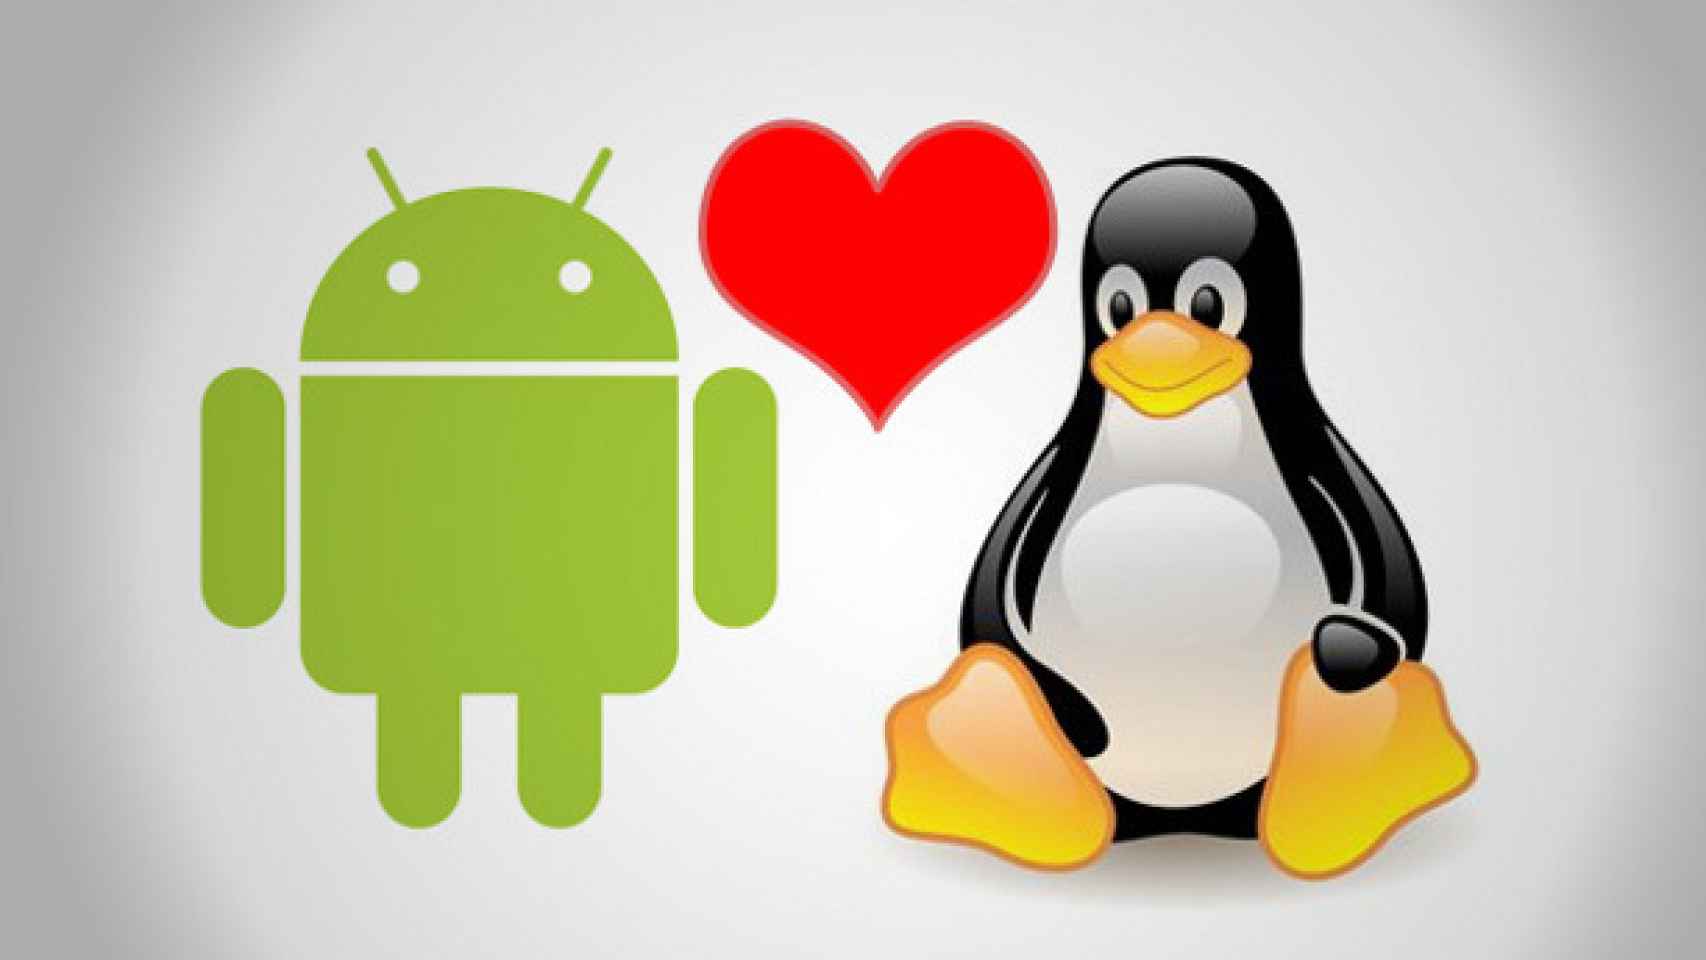 La nueva versión de Android usaría Linux 3.8 ¿Qué significa eso?